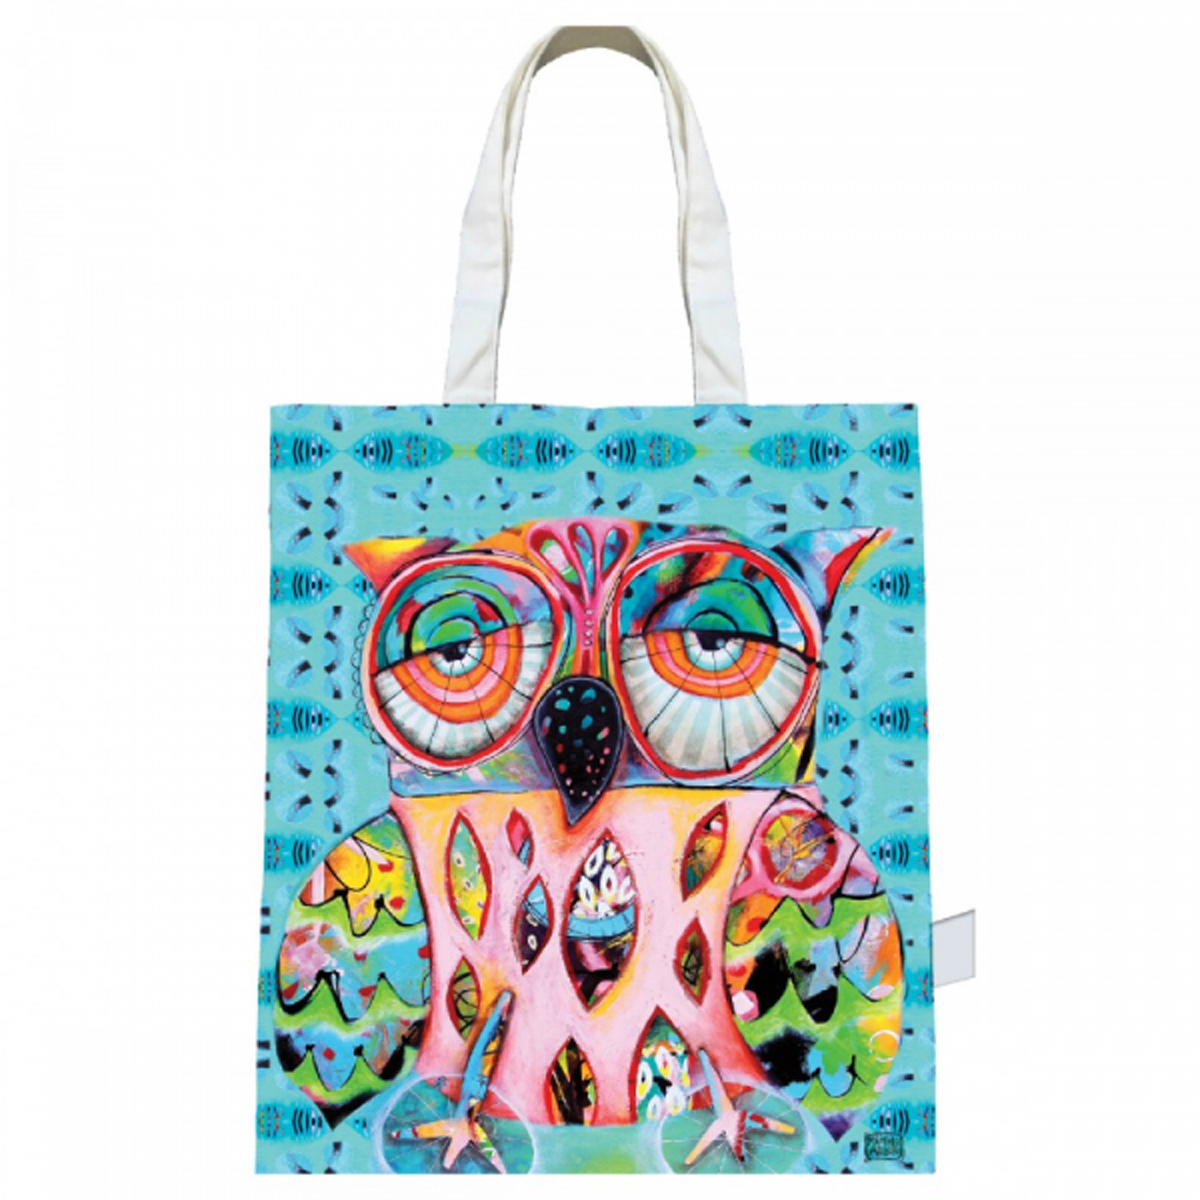 Sac coton / tote bag \'Allen Designs\' turquoise multicolore (chouette) - 43x39 cm - [R1954]